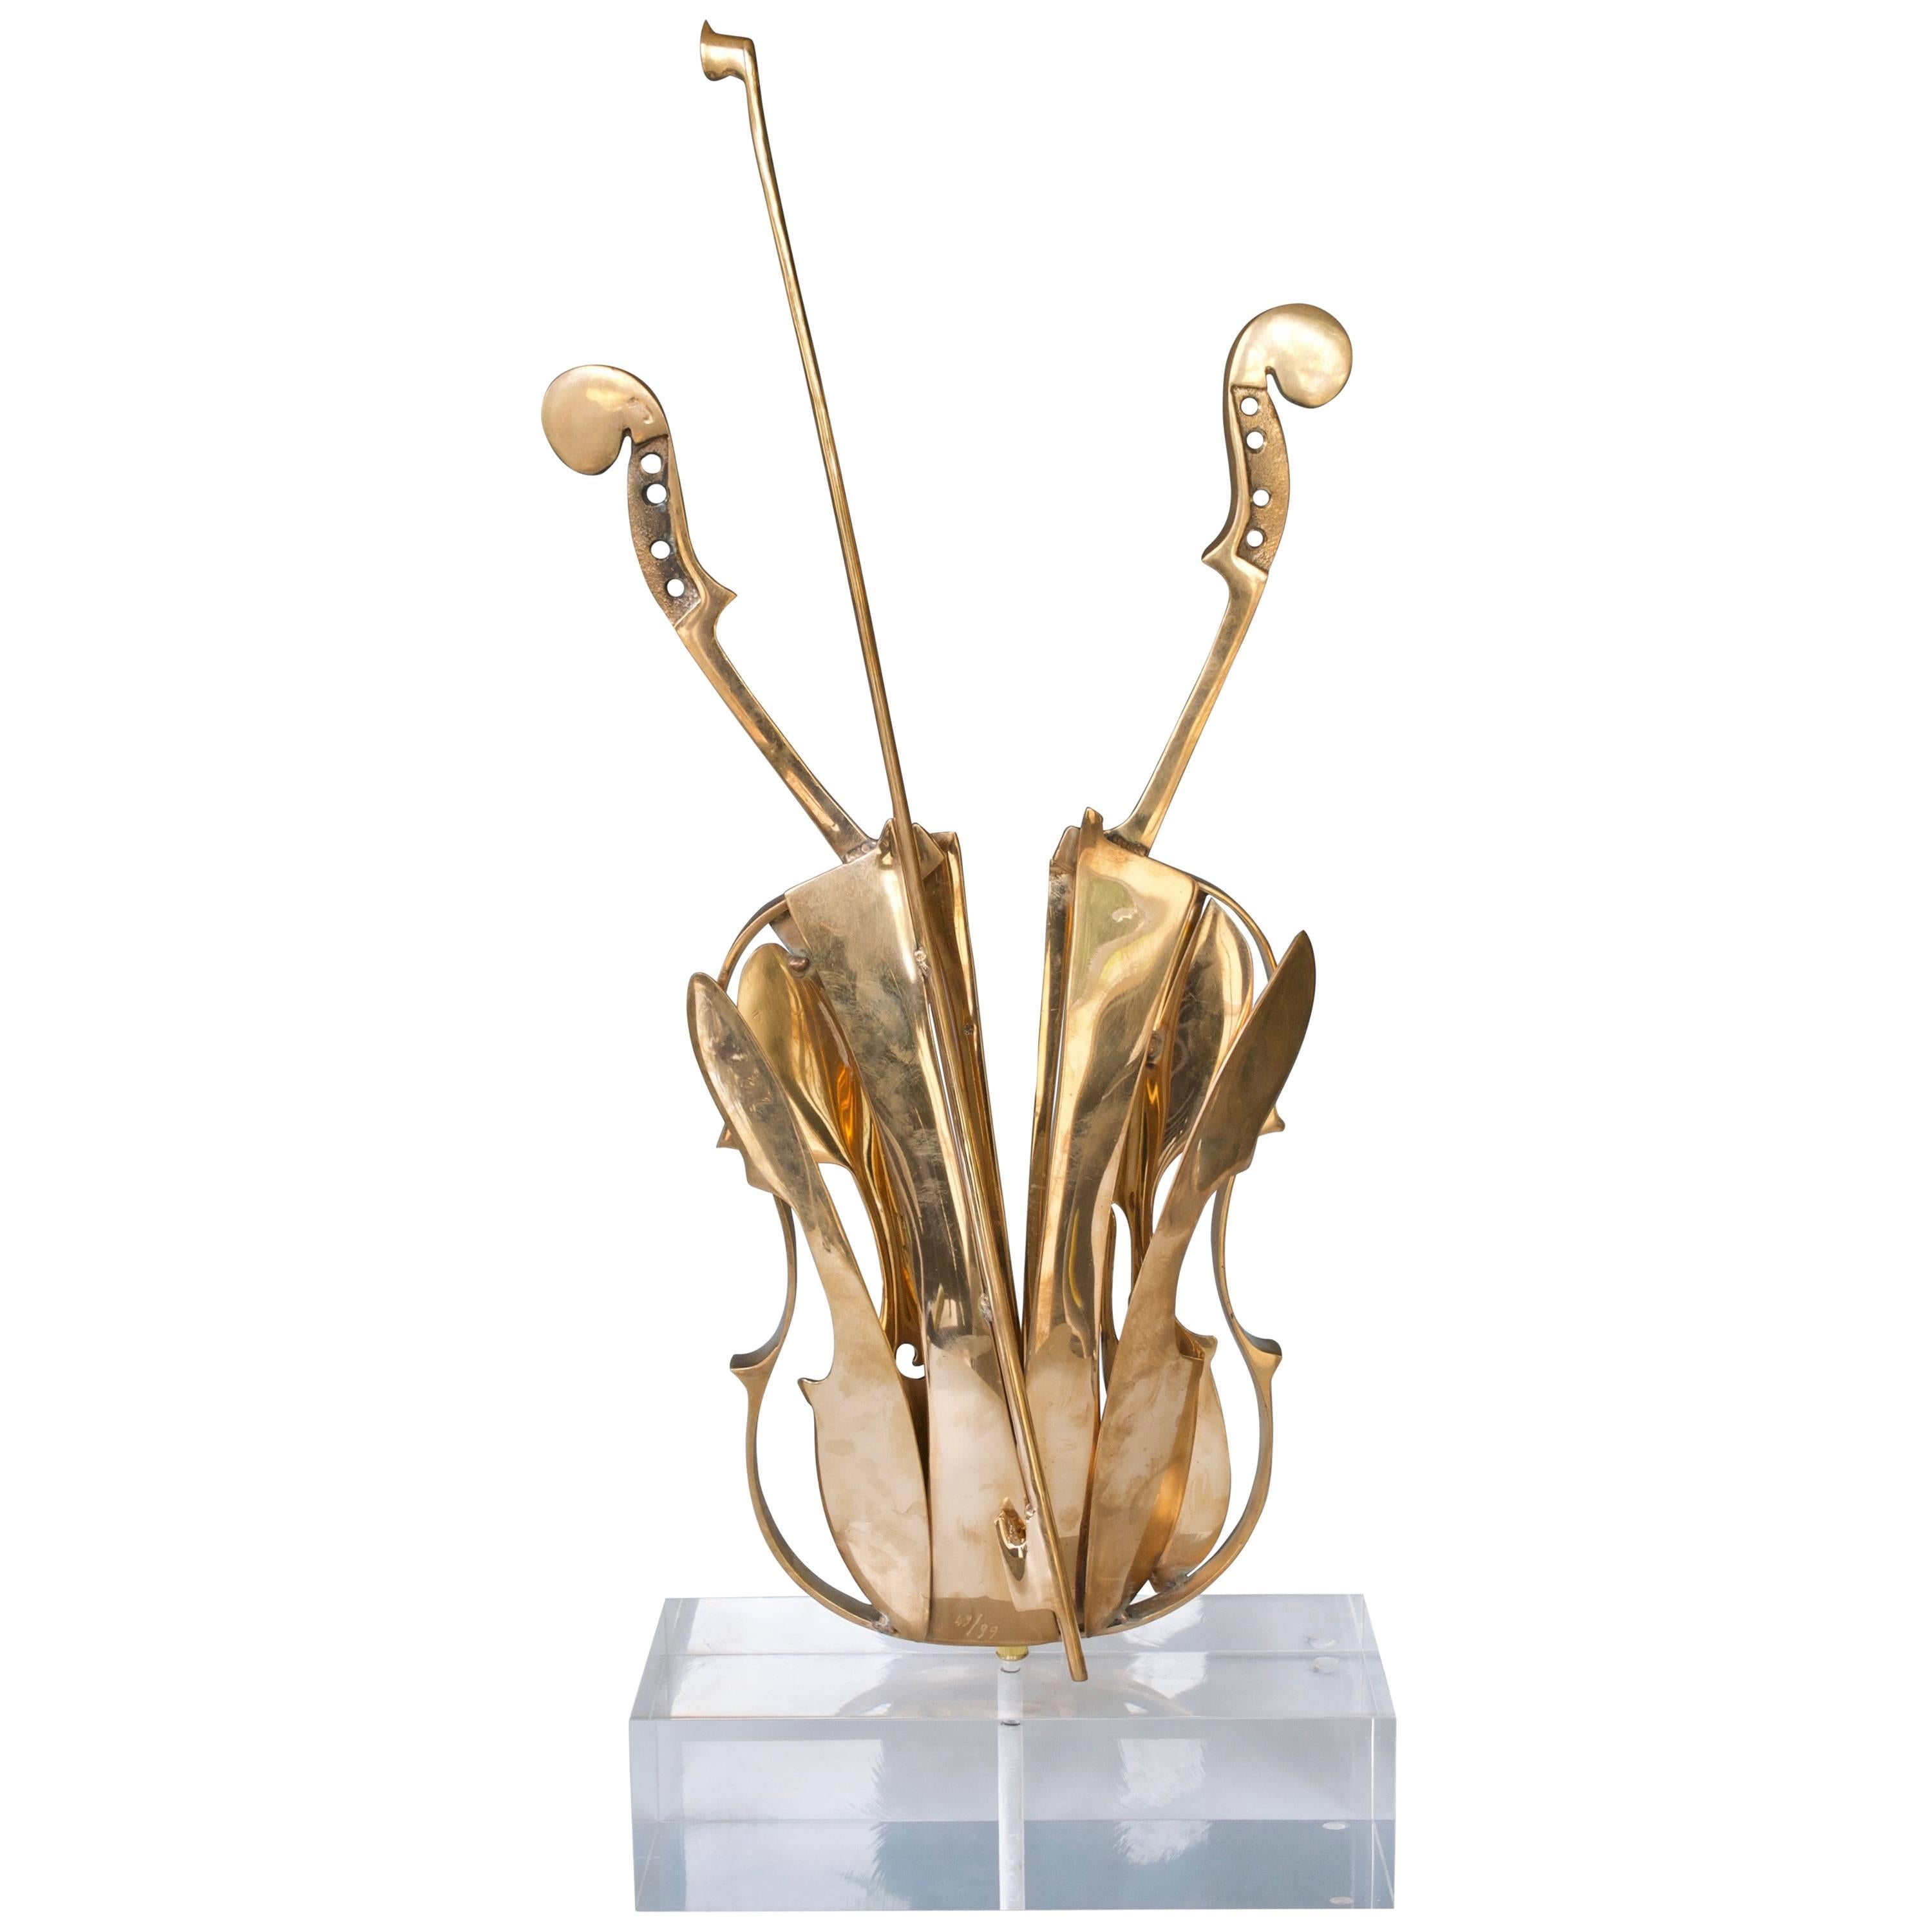 Beautiful Arman's Bronze Violin Sculpture For Sale